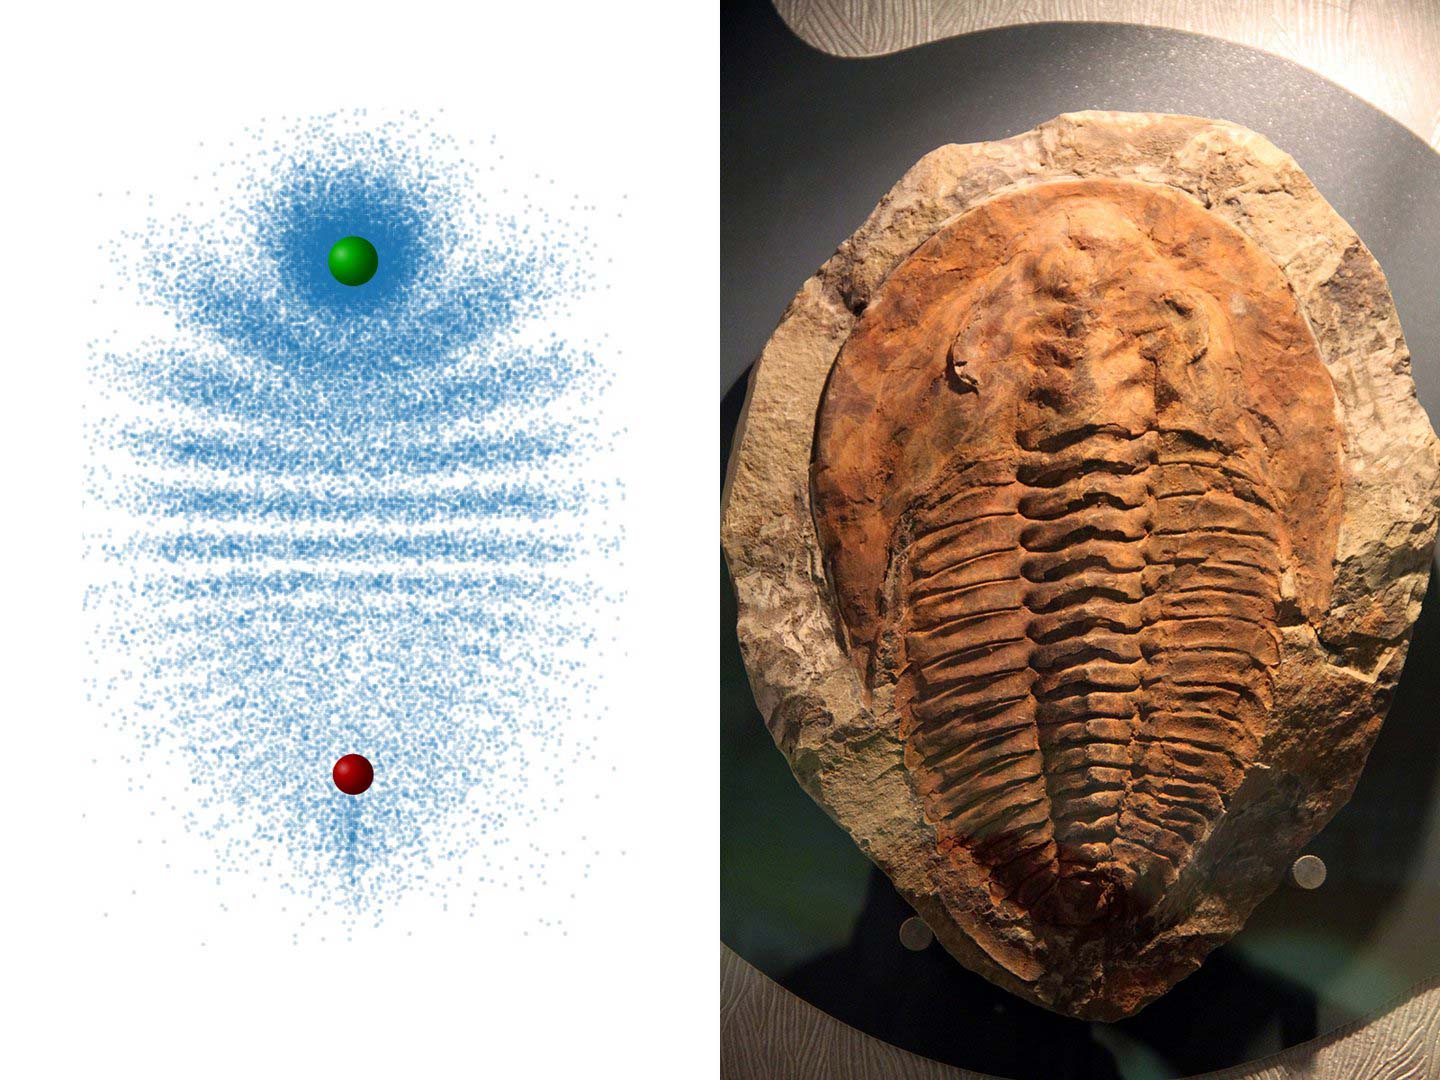 Los físicos crean partículas de trilobites gigantes